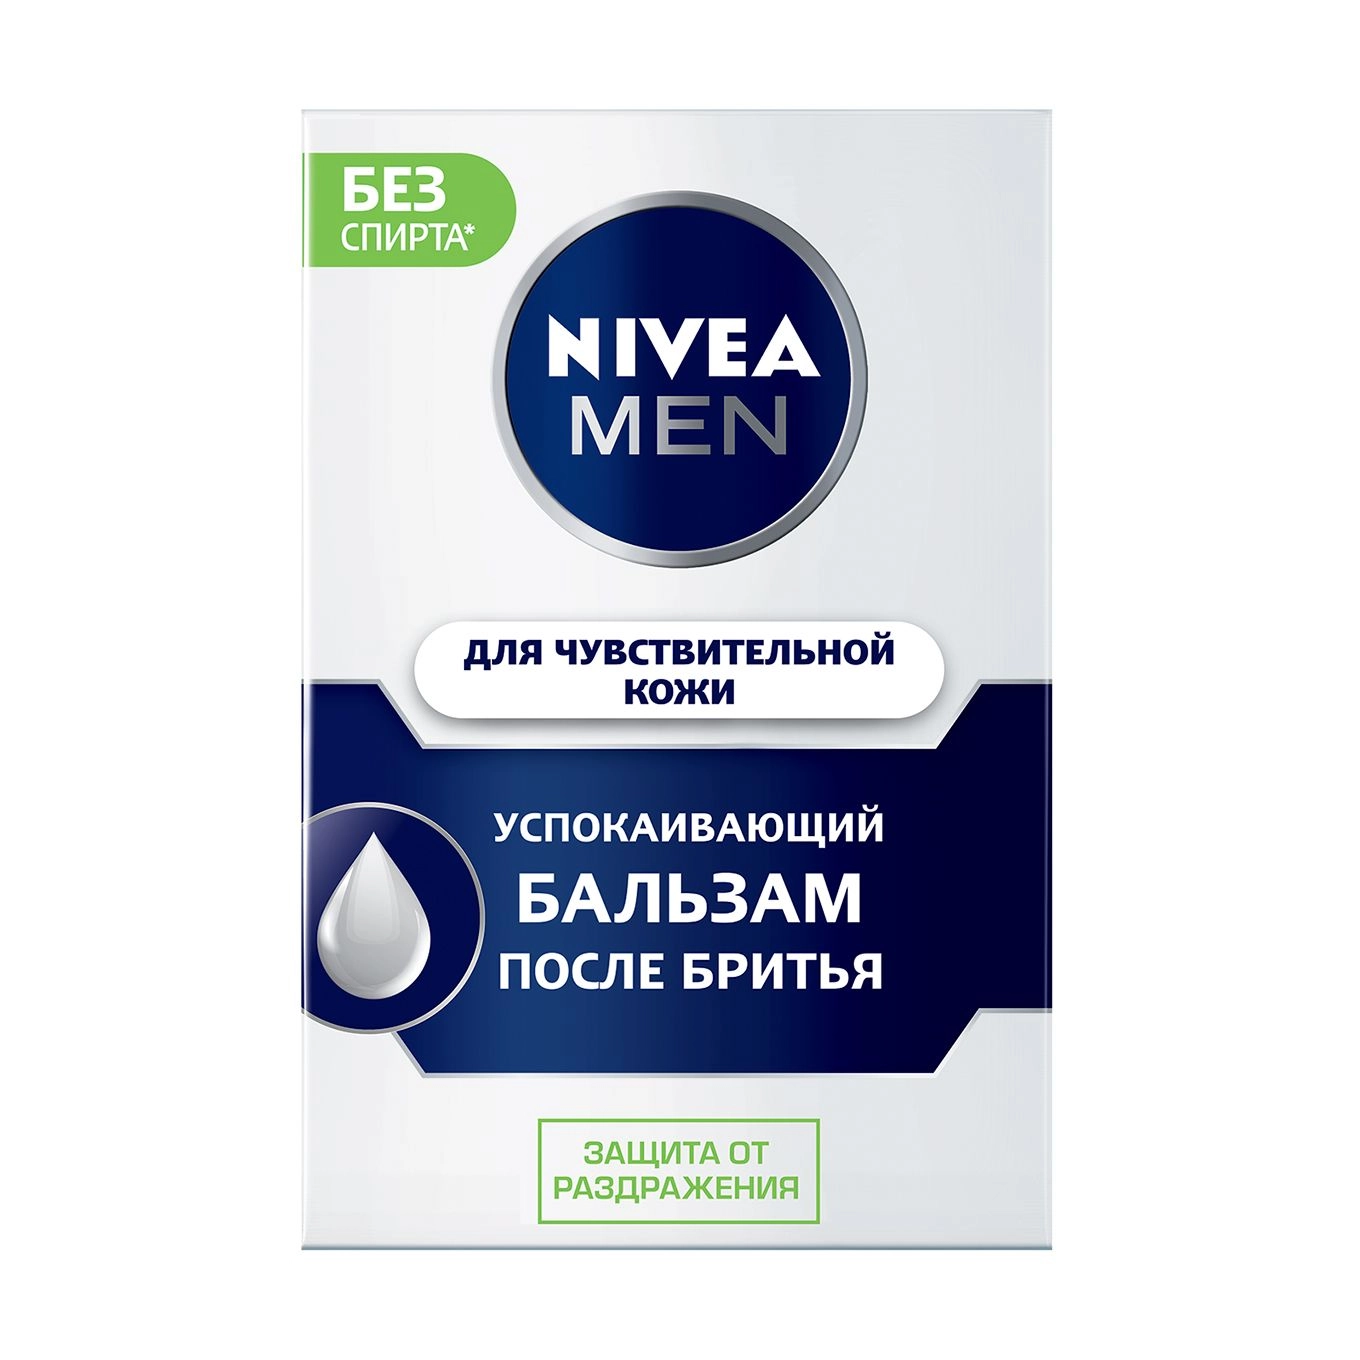 Nivea Men Бальзам успокаивающий после бритья, для чувствительной кожи NIVEA не содержит спирт, 100 мл - фото N2